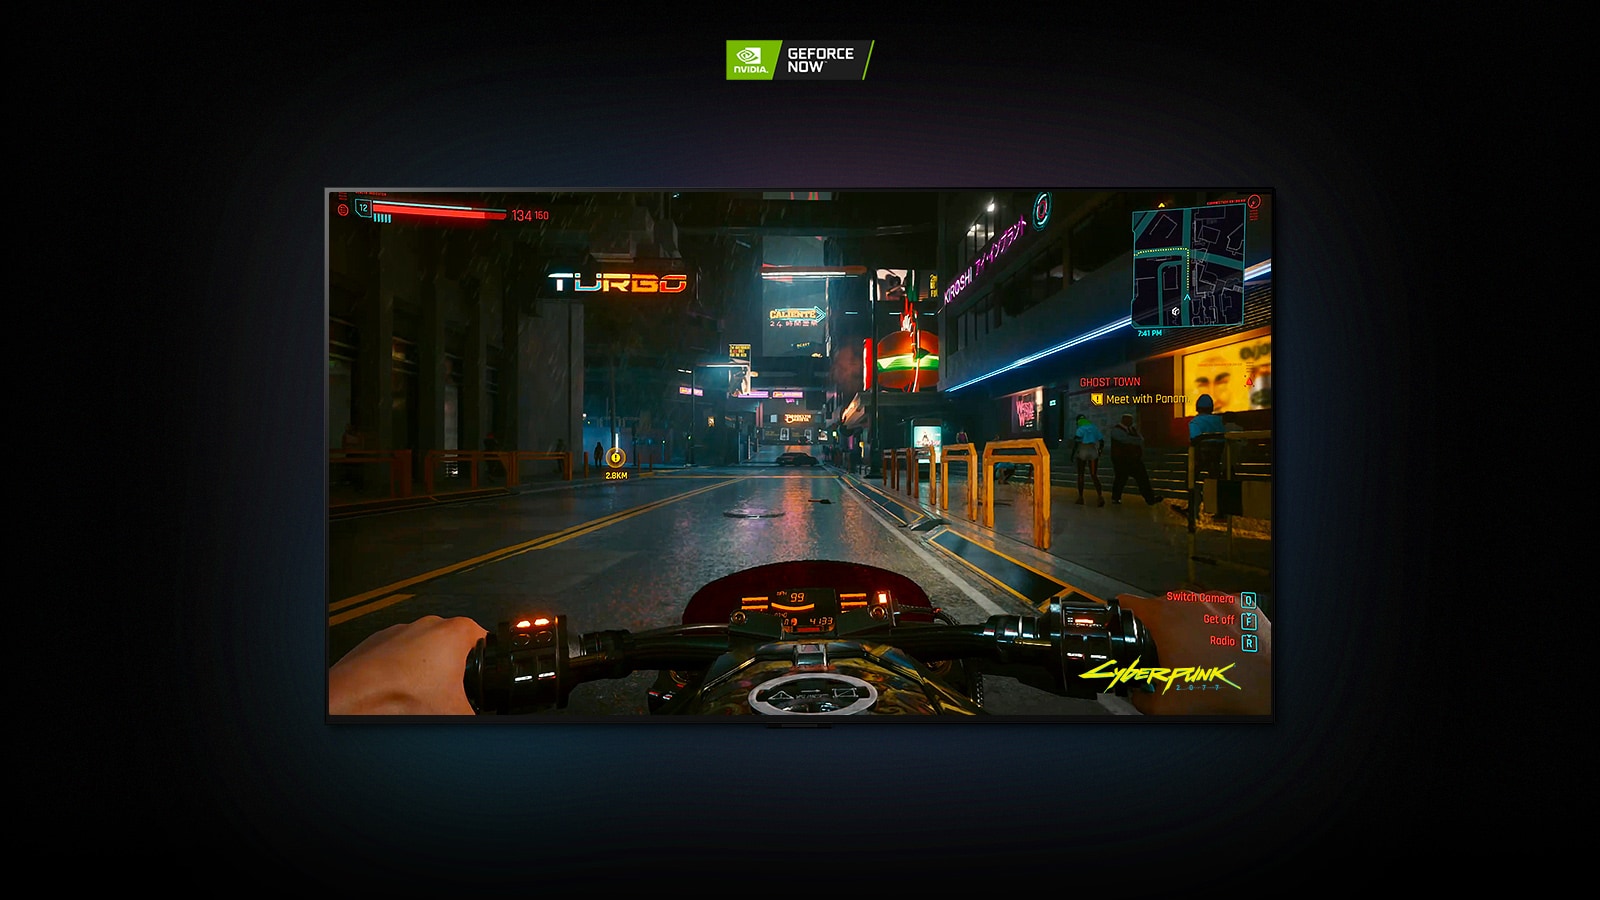 Az LG OLED kijelzőn a Cyberpunk 2077 jelenete látható, melyben a játékos egy neonfényekkel megvilágított utcán halad motorral